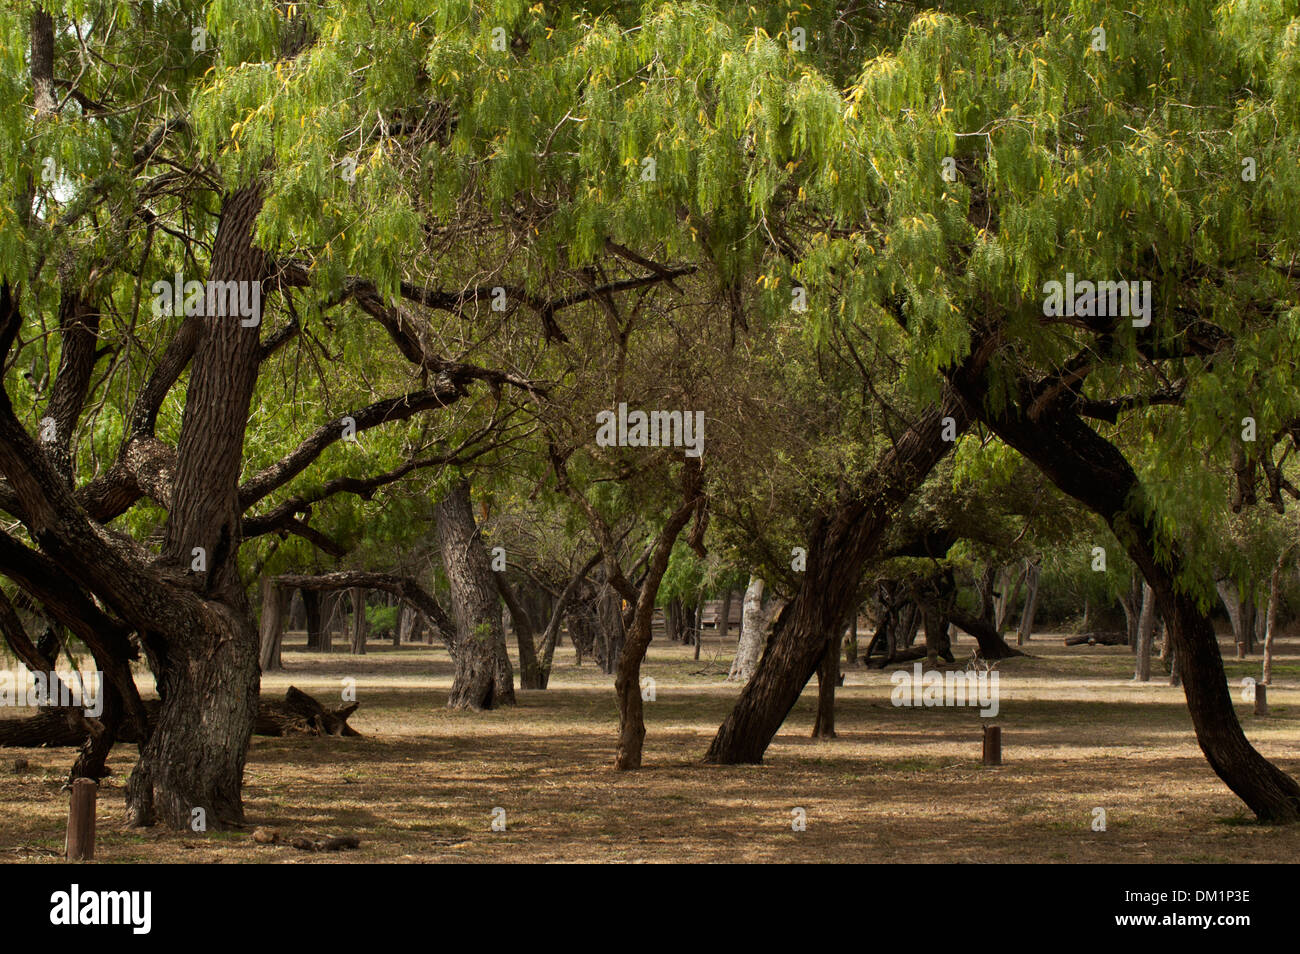 Les mesquites, Bentsen State Park, Mission, Texas, États-Unis Banque D'Images